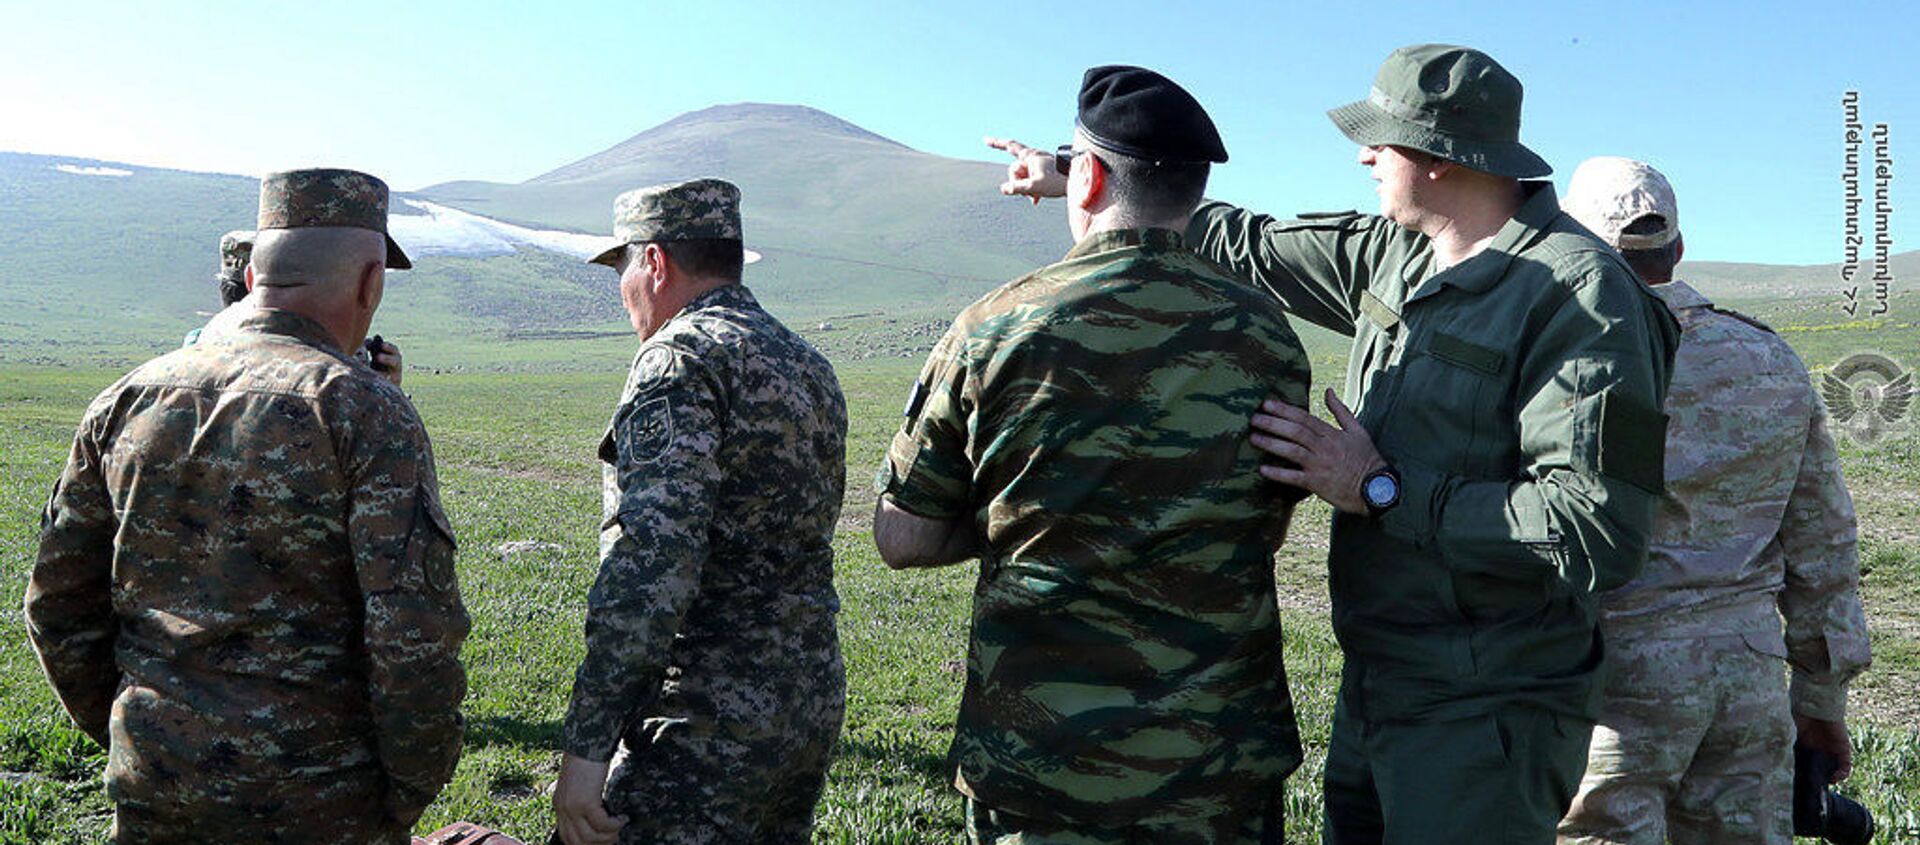 Минобороны организовало визит военных атташе иностранных посольств в Армении на армяно-азербайджанскую границу в Сюникской области (20 мая 2021). - Sputnik Армения, 1920, 21.05.2021